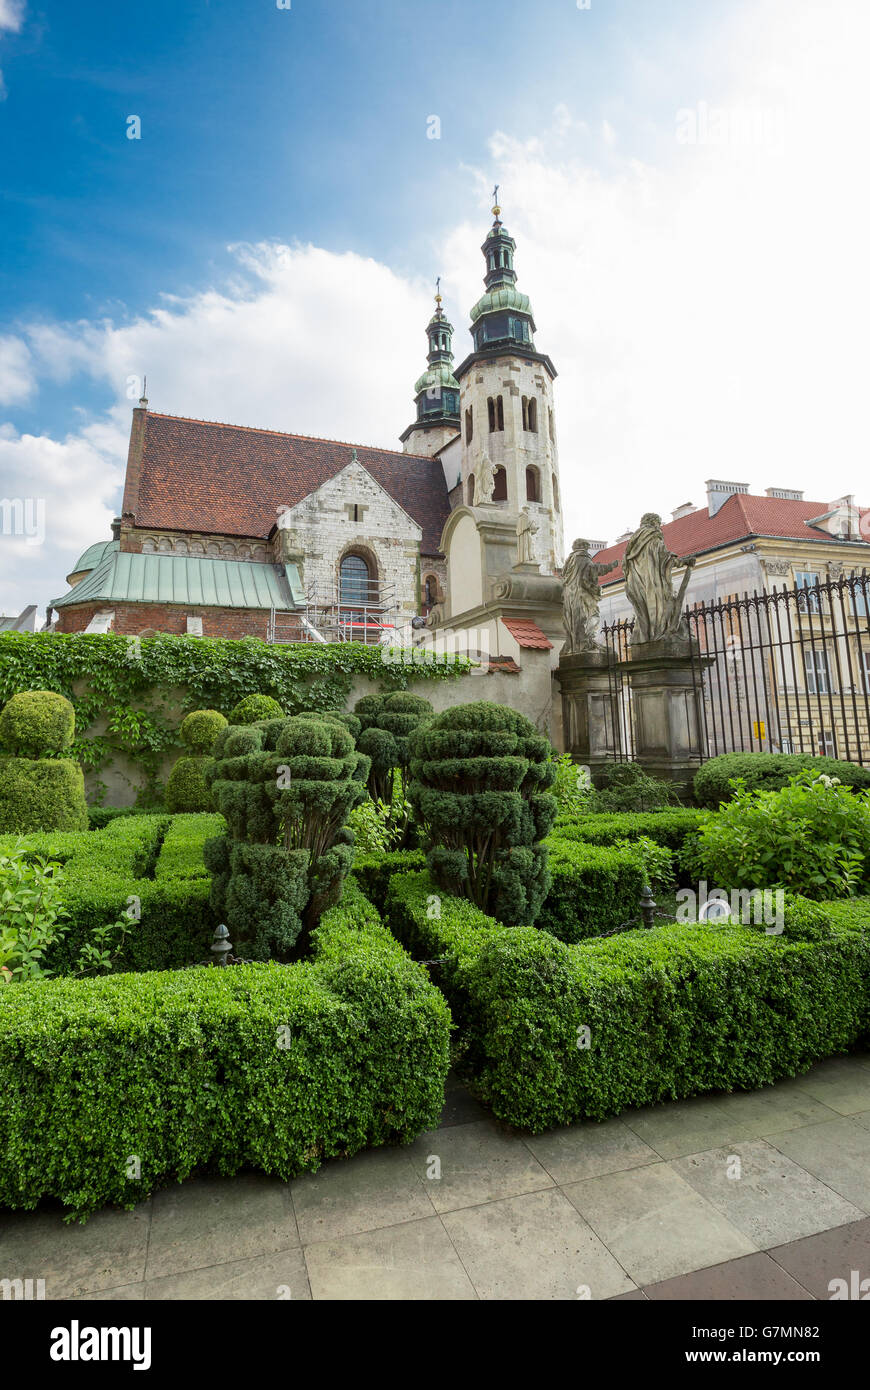 Cathédrale de Stanislas et Venceslas en Pologne (Cracovie). Banque D'Images